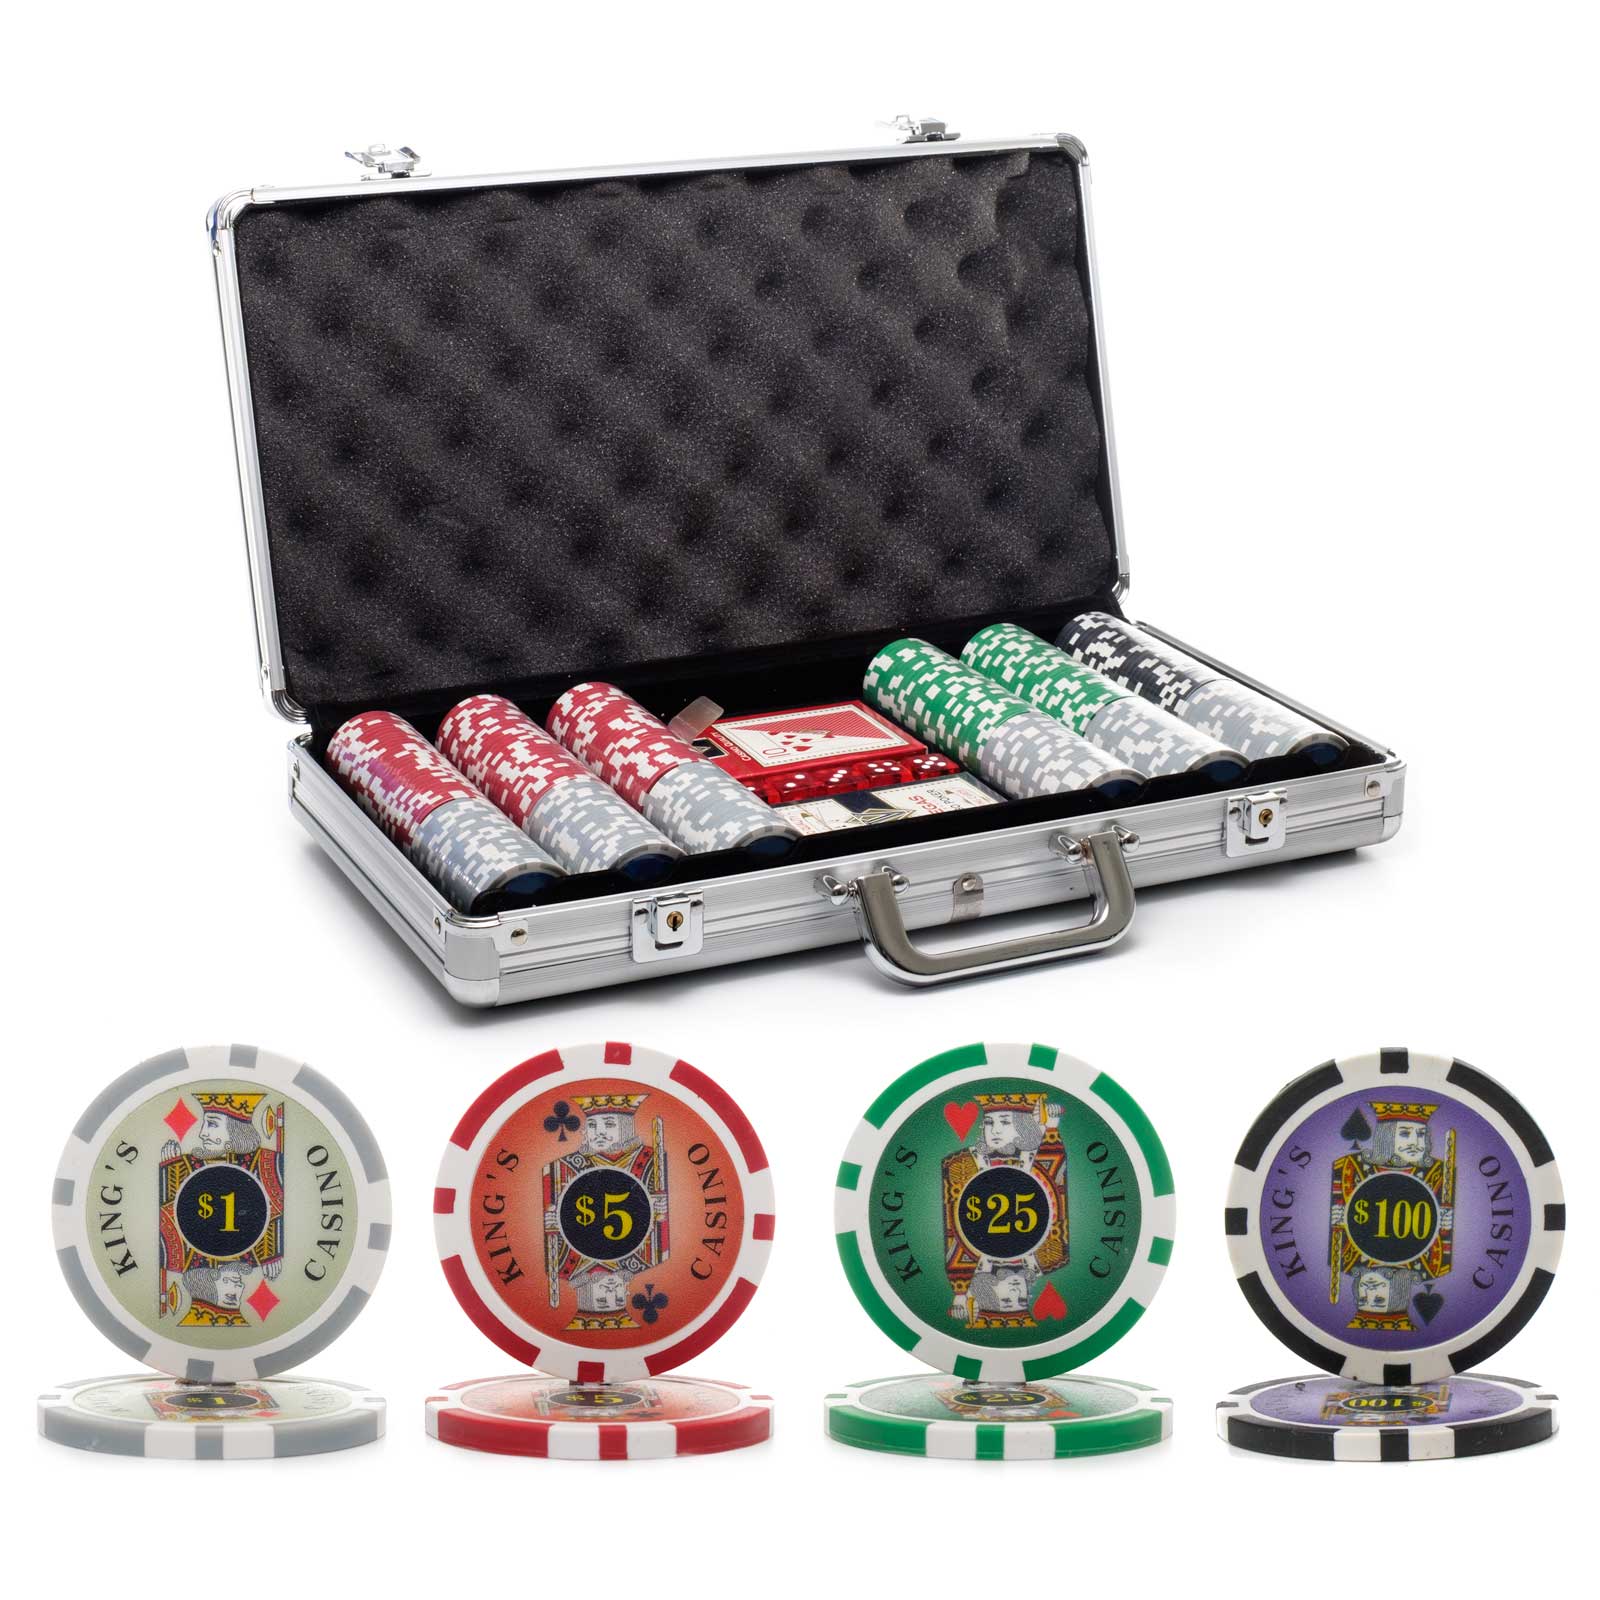 tournament poker chip set